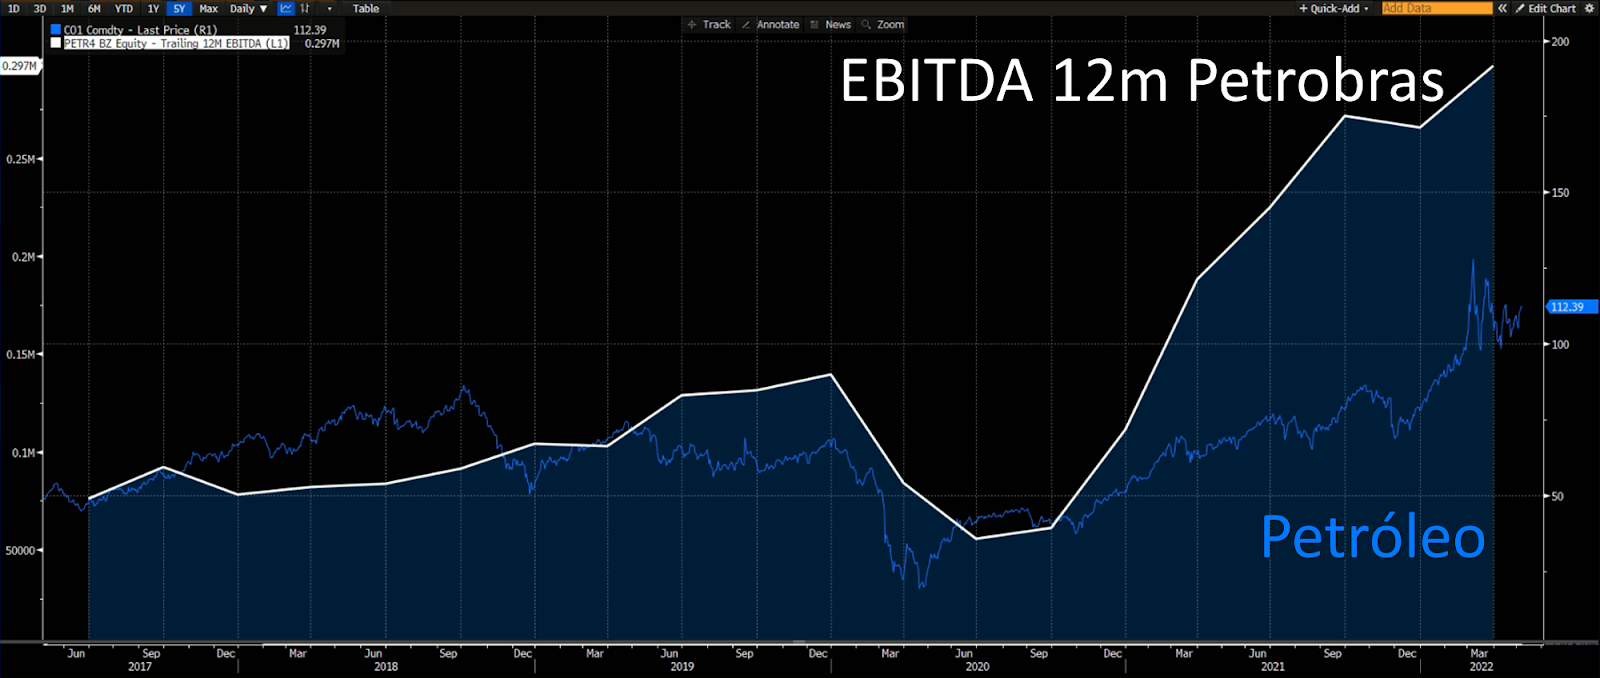 Gráfico apresenta Petróleo Brent e EBITDA Petrobras.